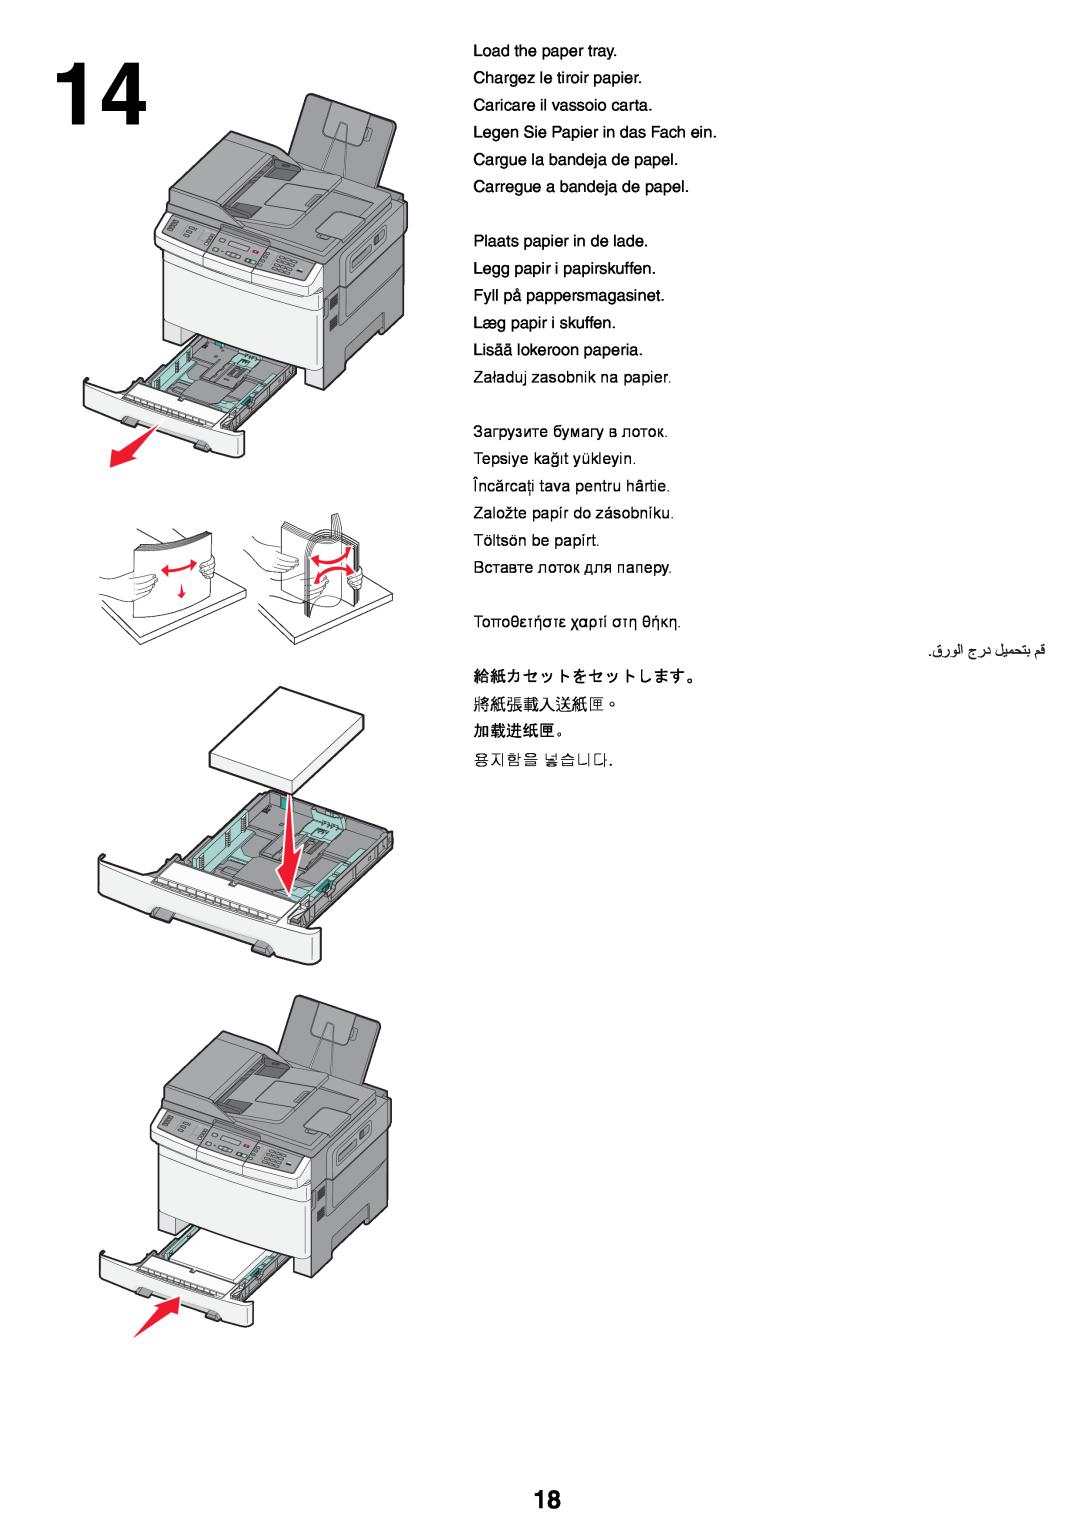 Lexmark X54x setup guide Load the paper tray Chargez le tiroir papier 